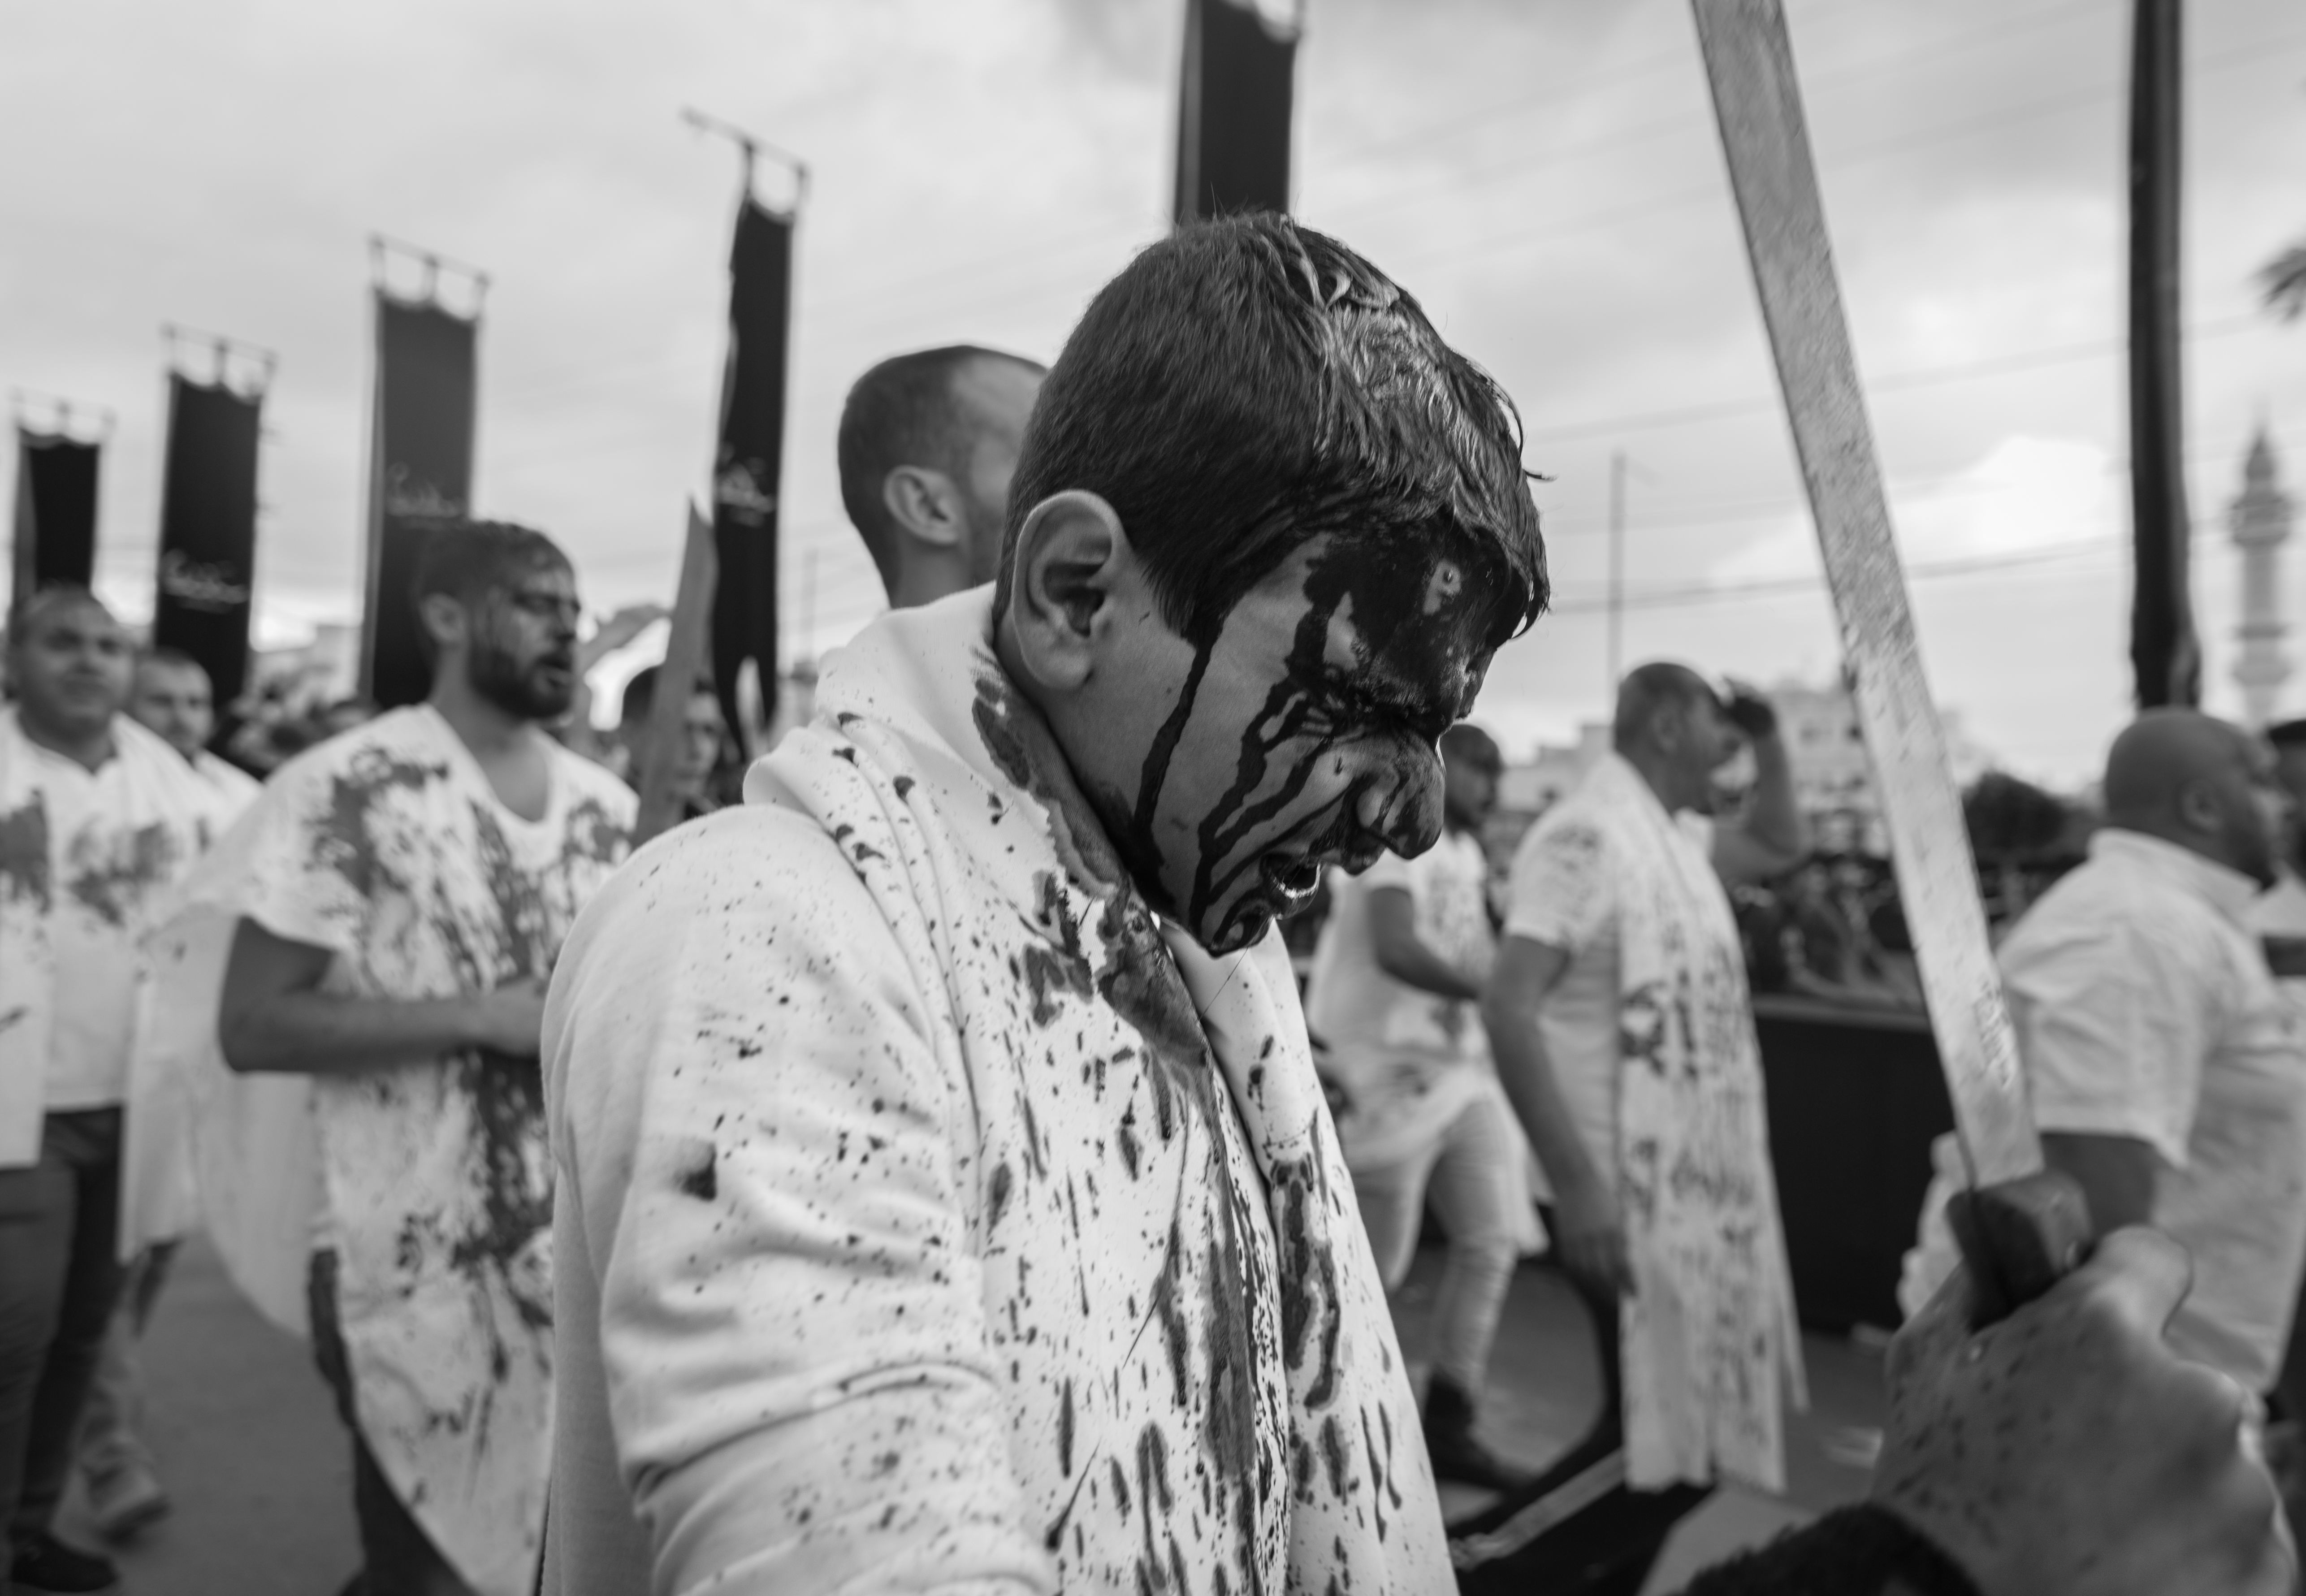 Shia men taking part in the bloodletting rite known as "tatbir" in Nabatiyeh, Lebanon, November 2014 (photo: Maya Hautefeuille)